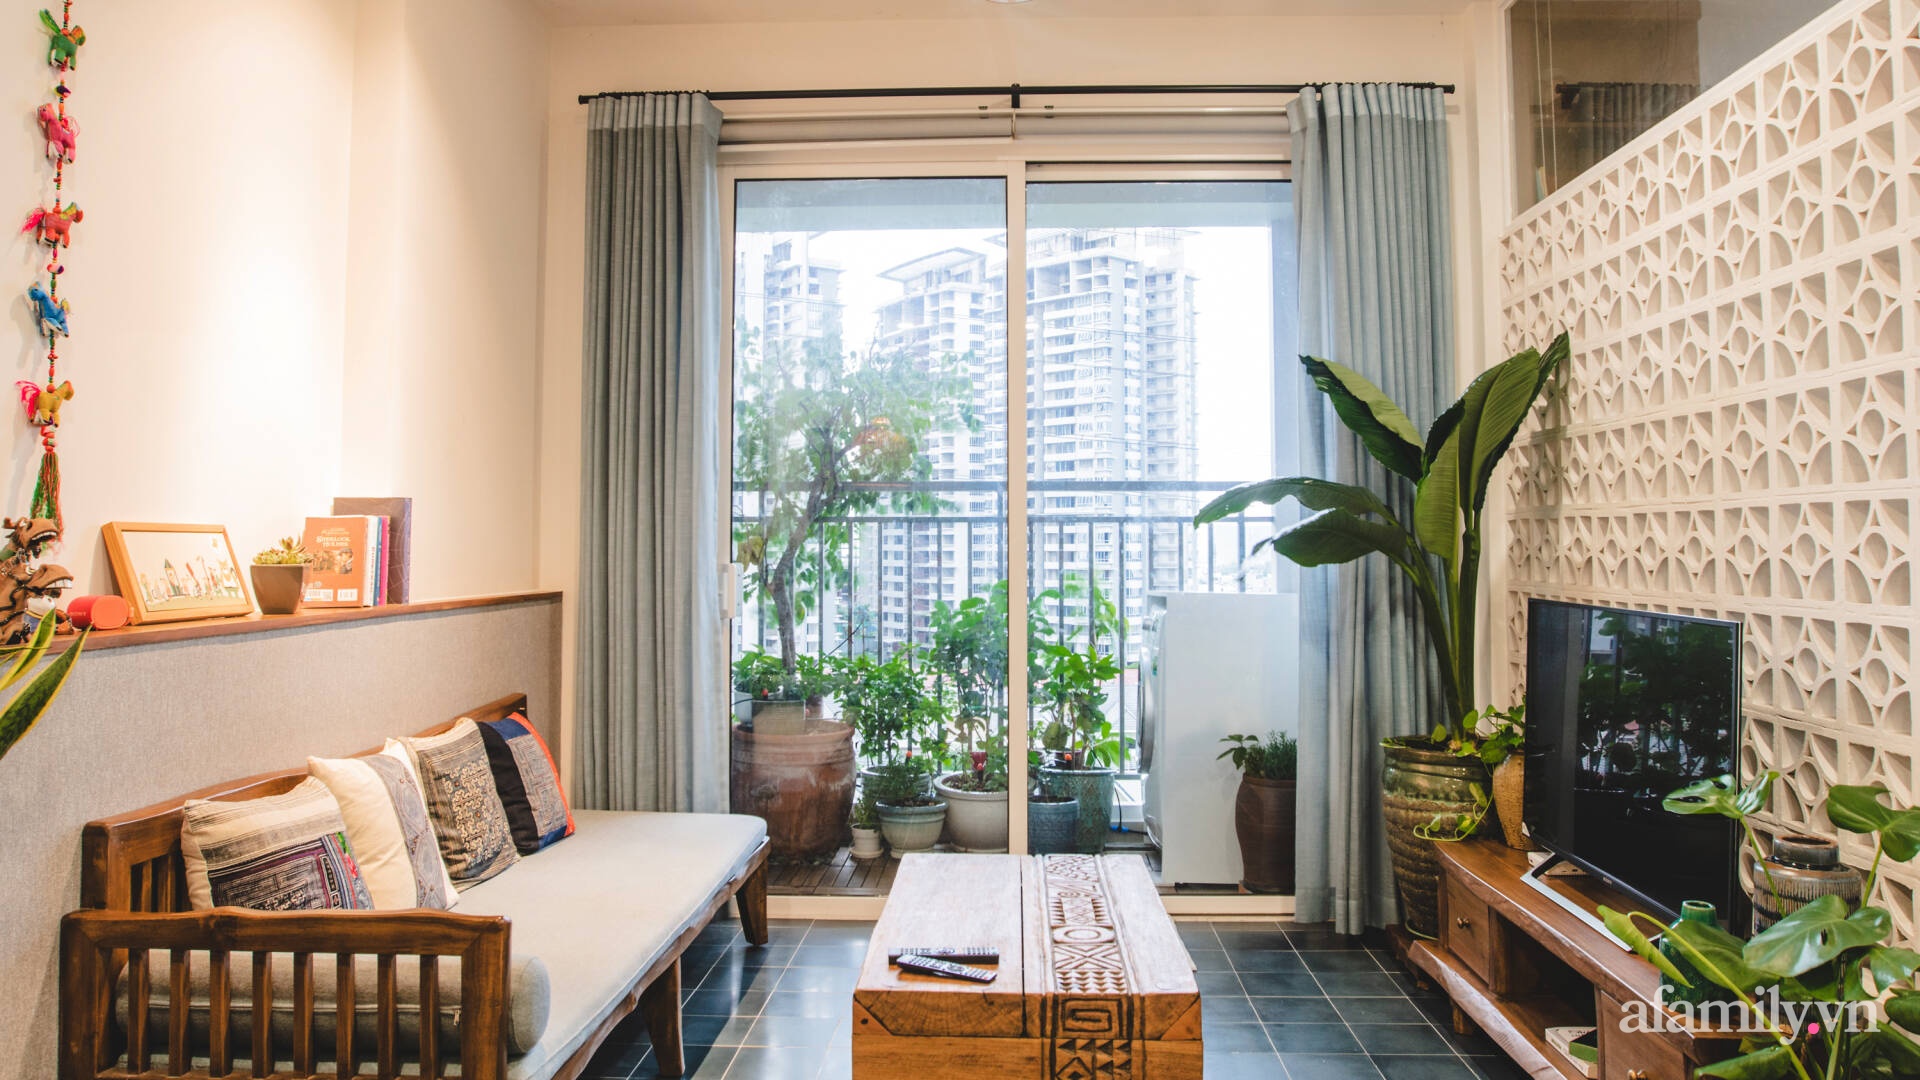 Căn hộ 70m² trầm ấm, tinh tế với vật liệu truyền thống dành cho gia đình 3 người ở Sài Gòn có chi phí hoàn thiện 530 triệu đồng - Ảnh 1.